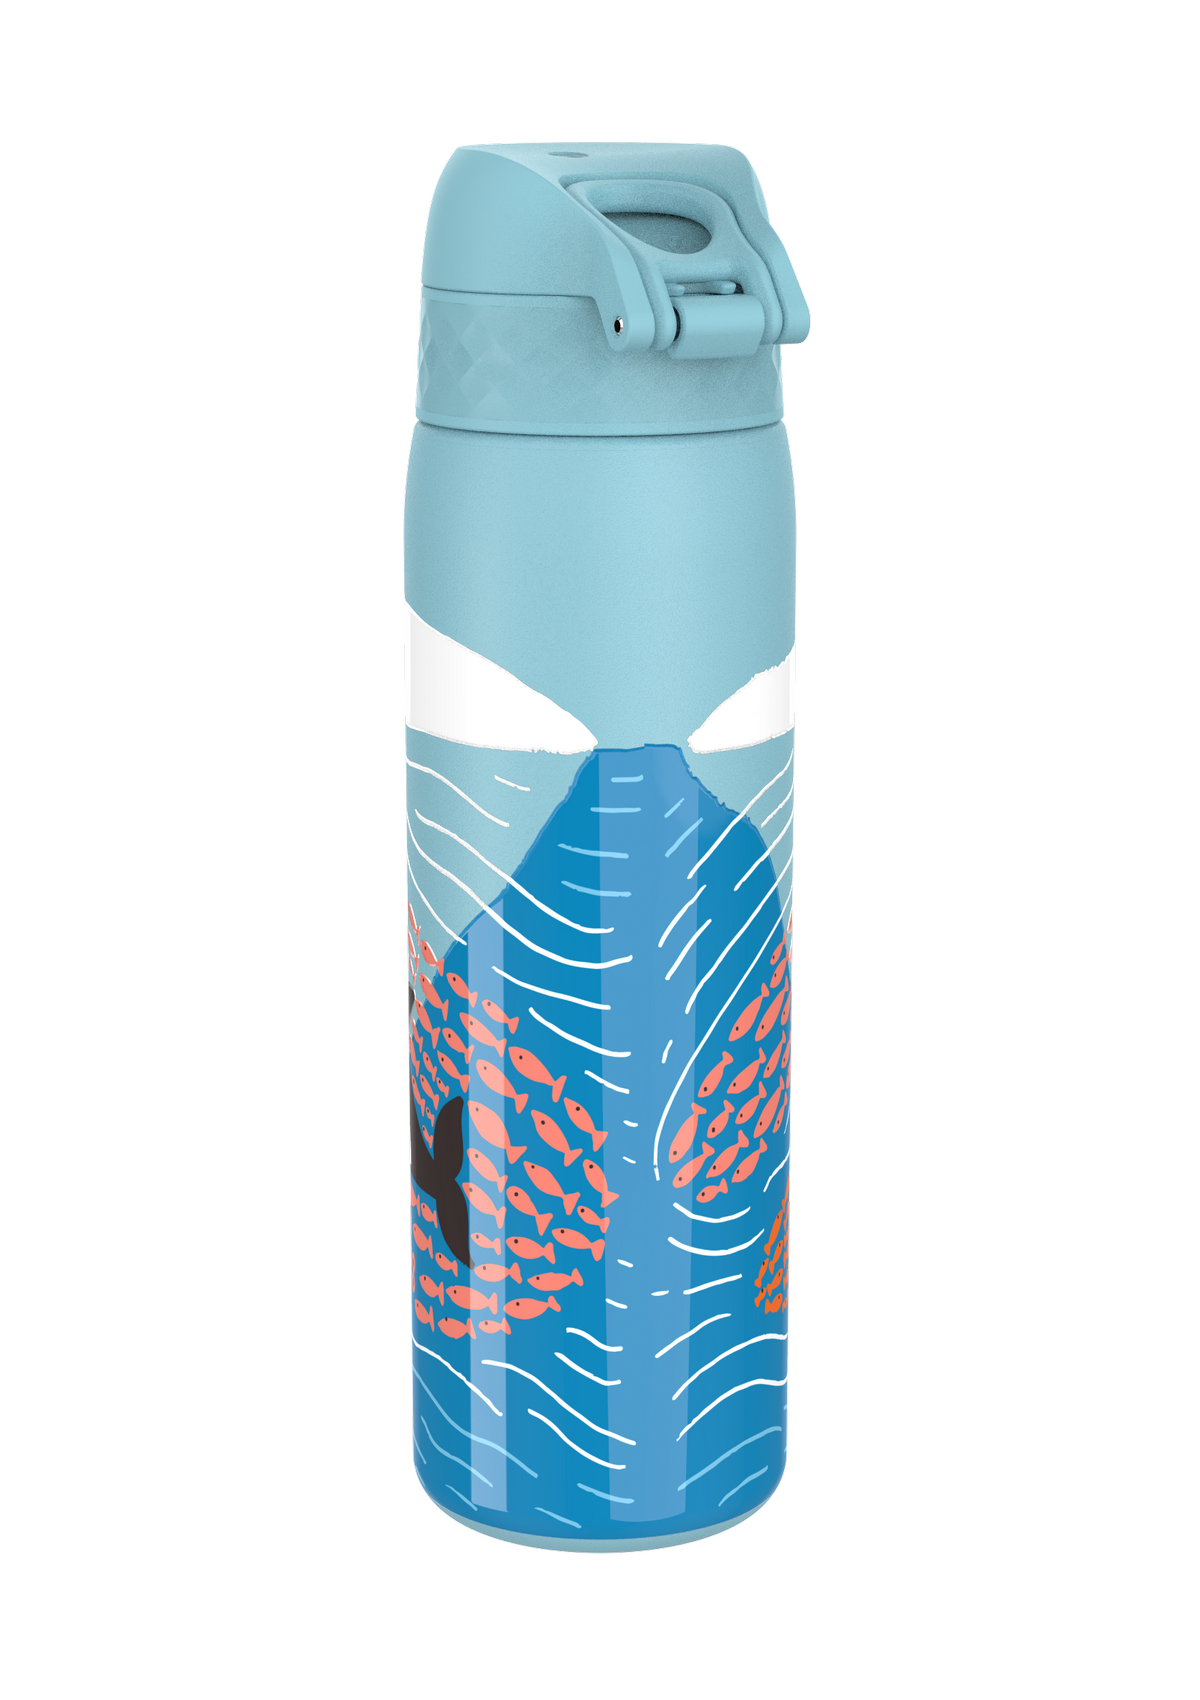 ION8 Water Bottle Leak Proof 500ml & 600ml BPA Free